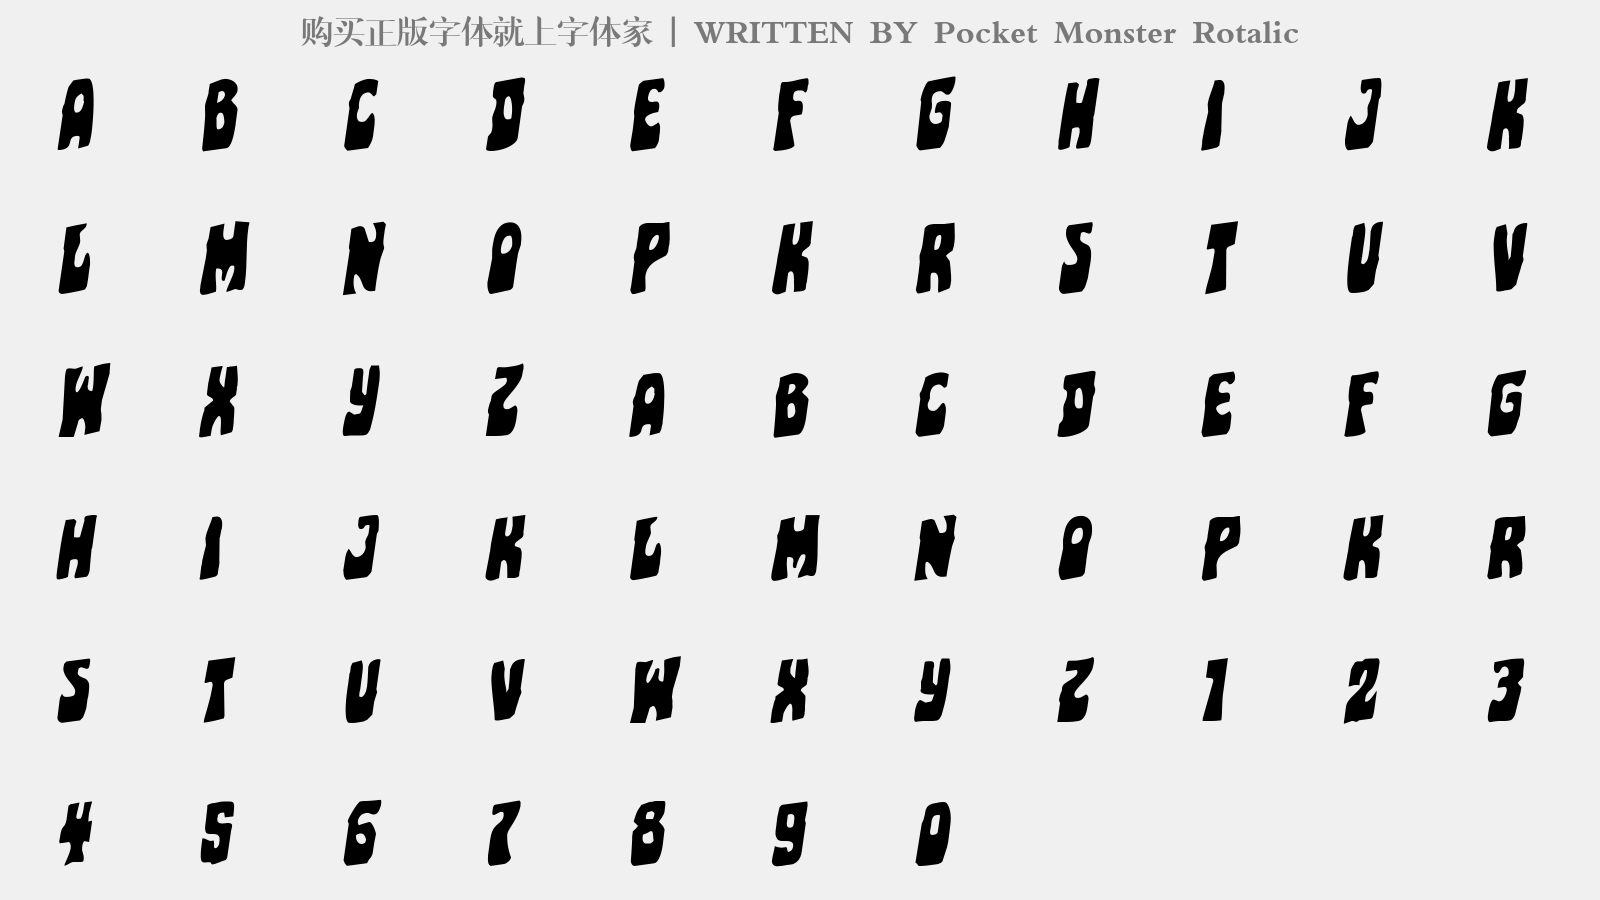 Pocket Monster Rotalic - 大写字母/小写字母/数字